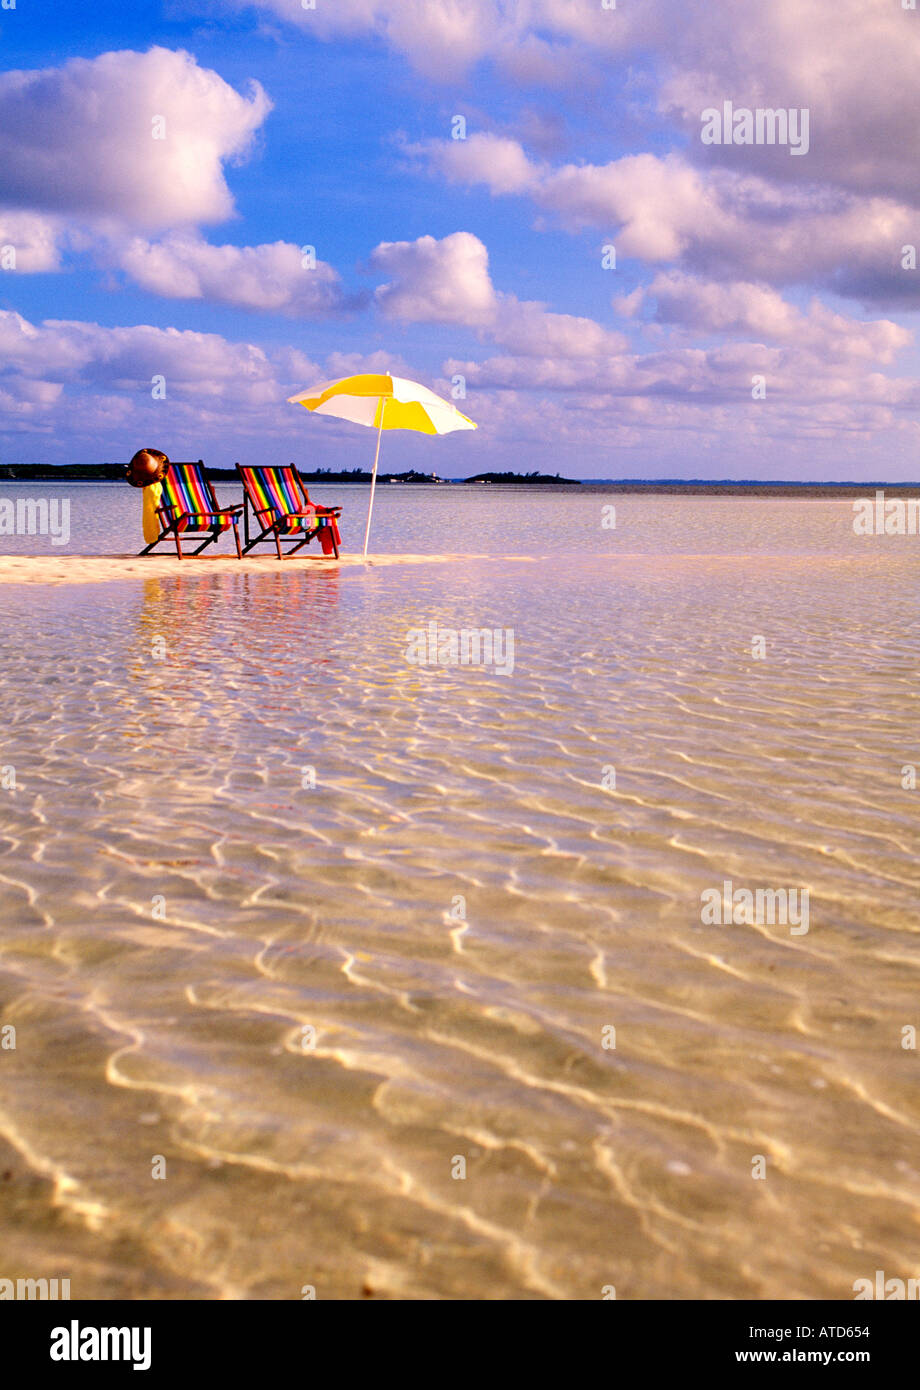 Sedie a sdraio e un ombrellone giallo a sedersi su una spiaggia rivolta verso le acque cristalline del Mar dei Caraibi alle Bahamas Foto Stock